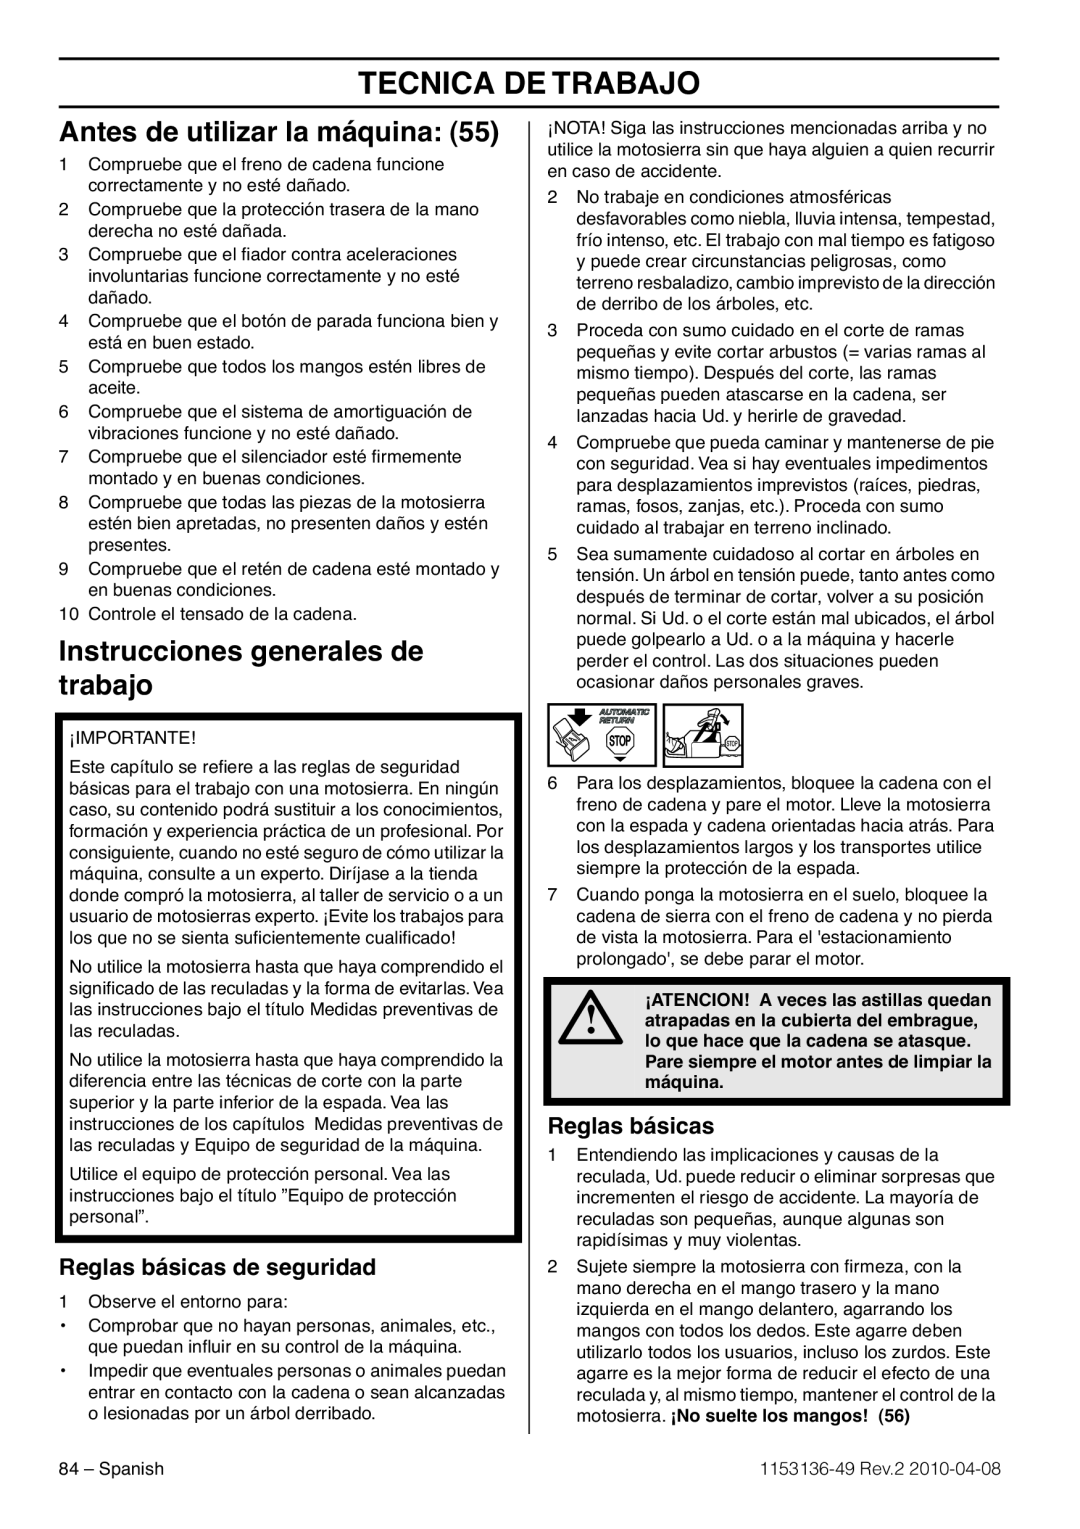 Husqvarna 1153136-49 Tecnica De Trabajo, Antes de utilizar la máquina, Instrucciones generales de trabajo, Reglas básicas 